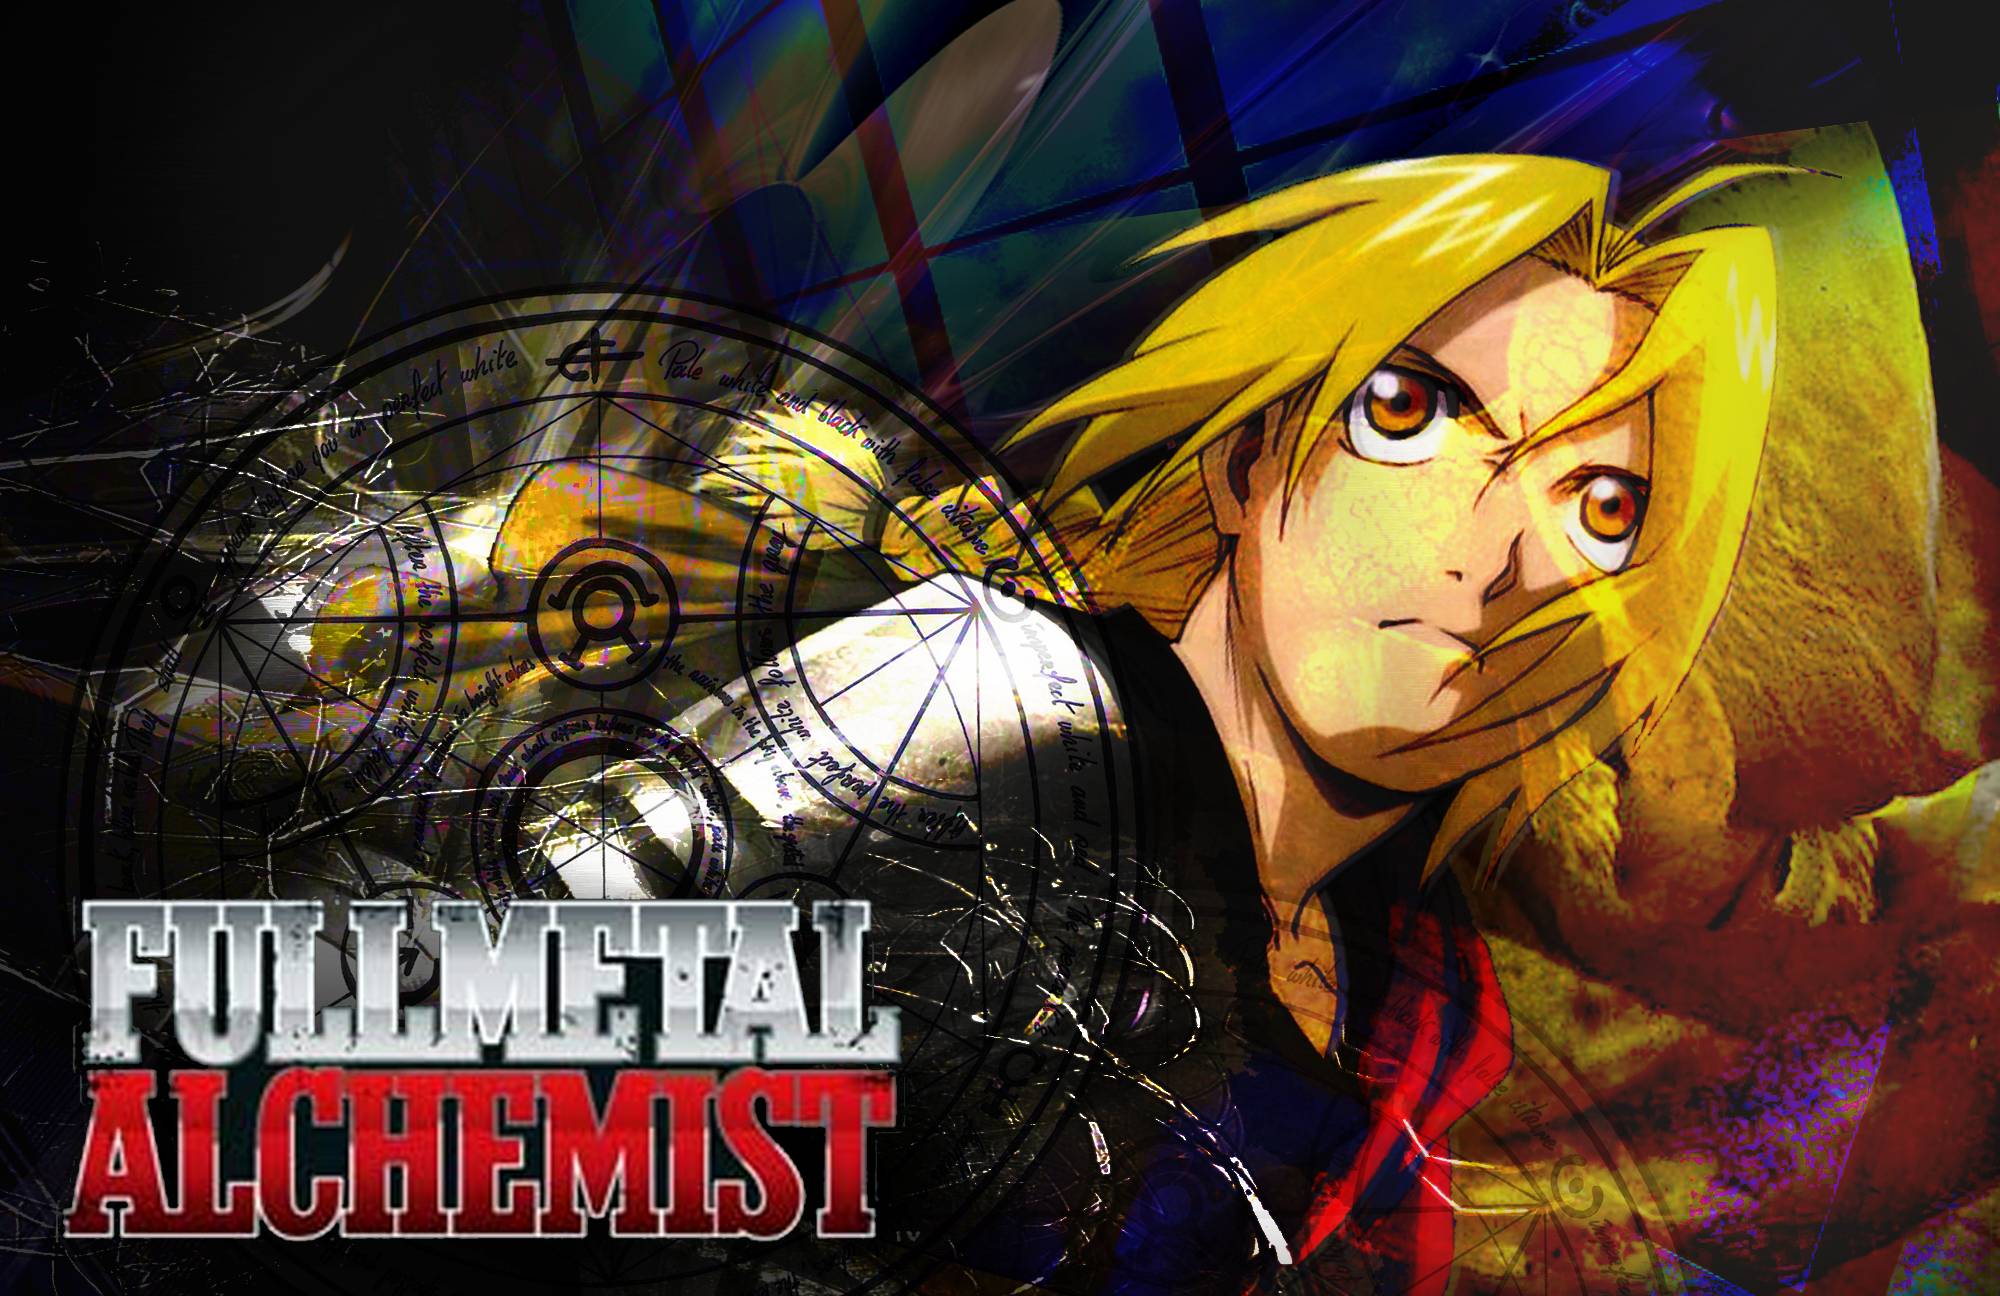 Fullmetal Alchemist Anime Wallpaper 5270 Background. fullhdimage